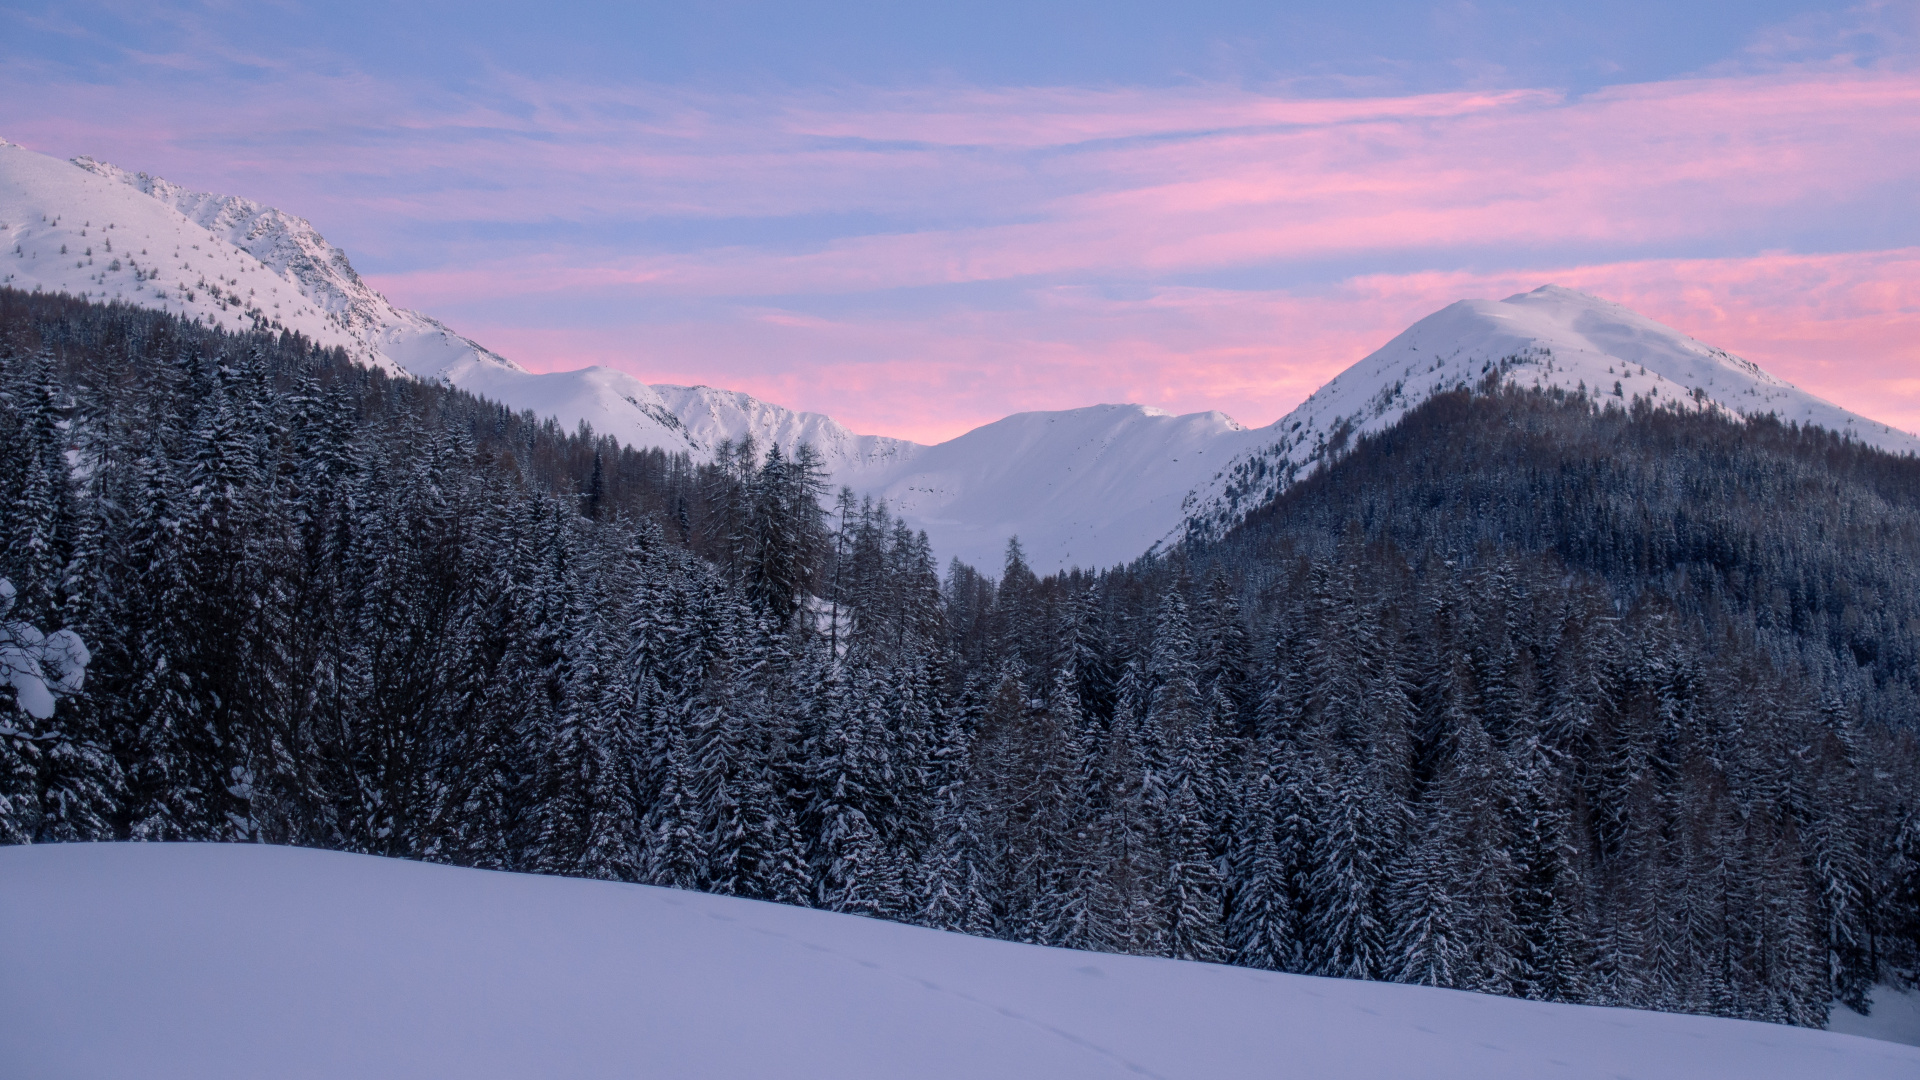 Schnee, Winter, Bergigen Landschaftsformen, Natur, Bergkette. Wallpaper in 1920x1080 Resolution